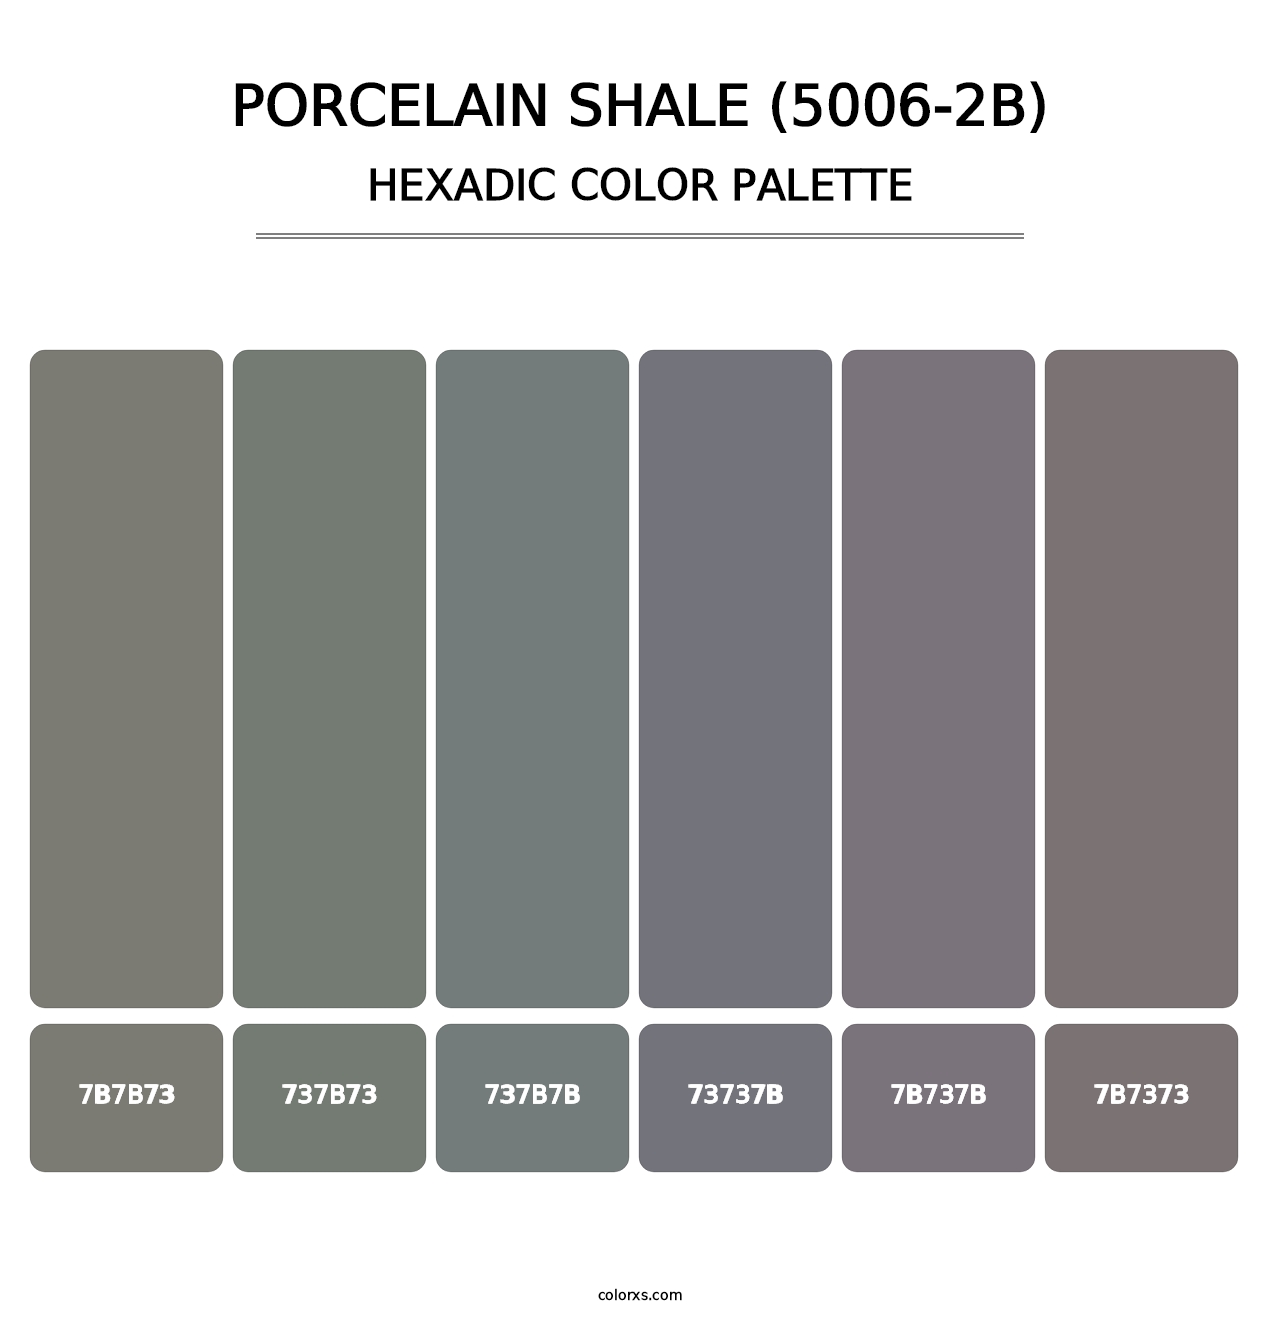 Porcelain Shale (5006-2B) - Hexadic Color Palette